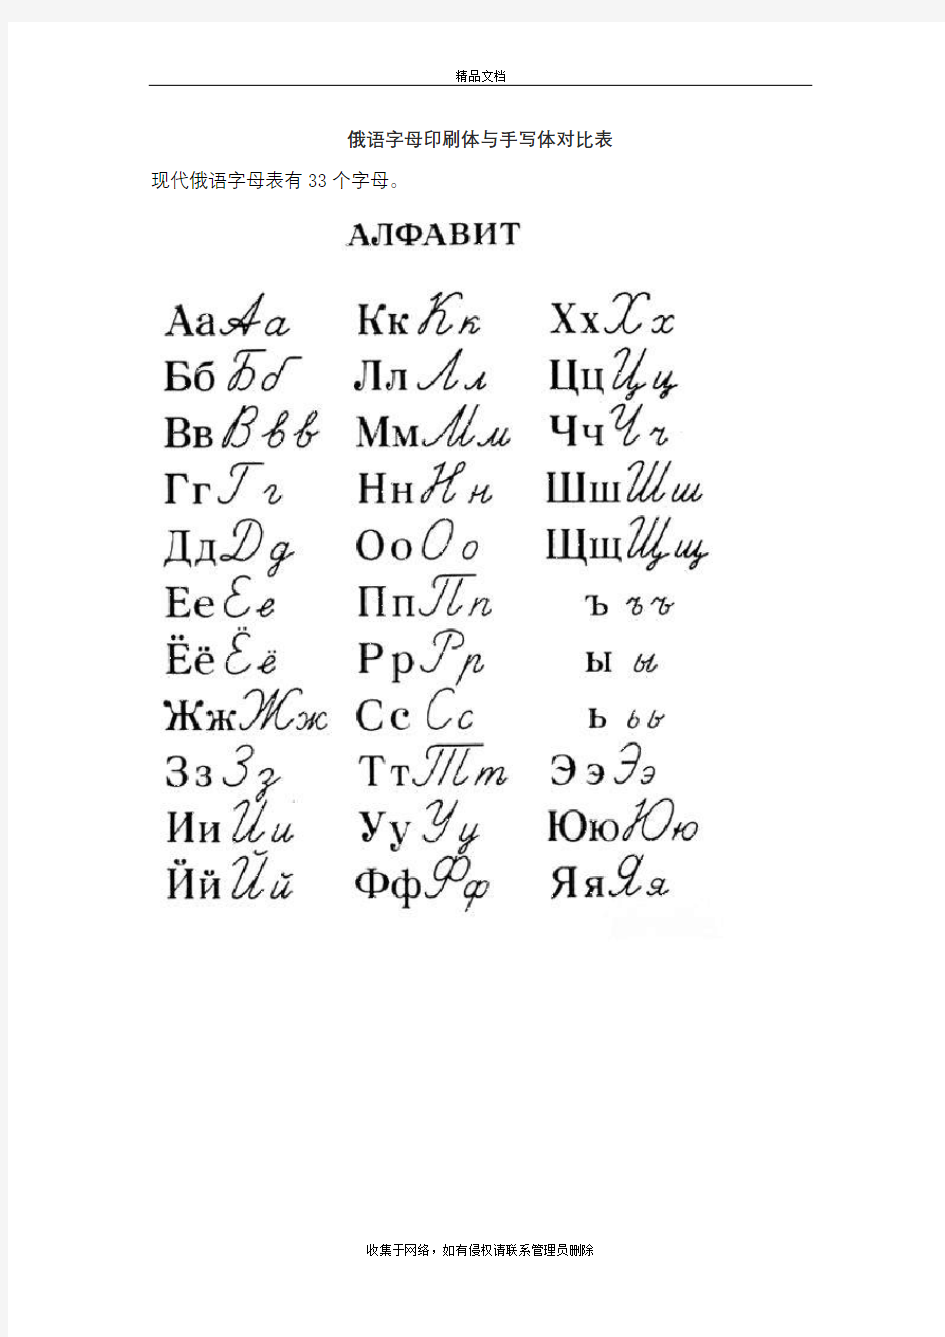 俄语字母表(印刷体与手写体对照)教学文案